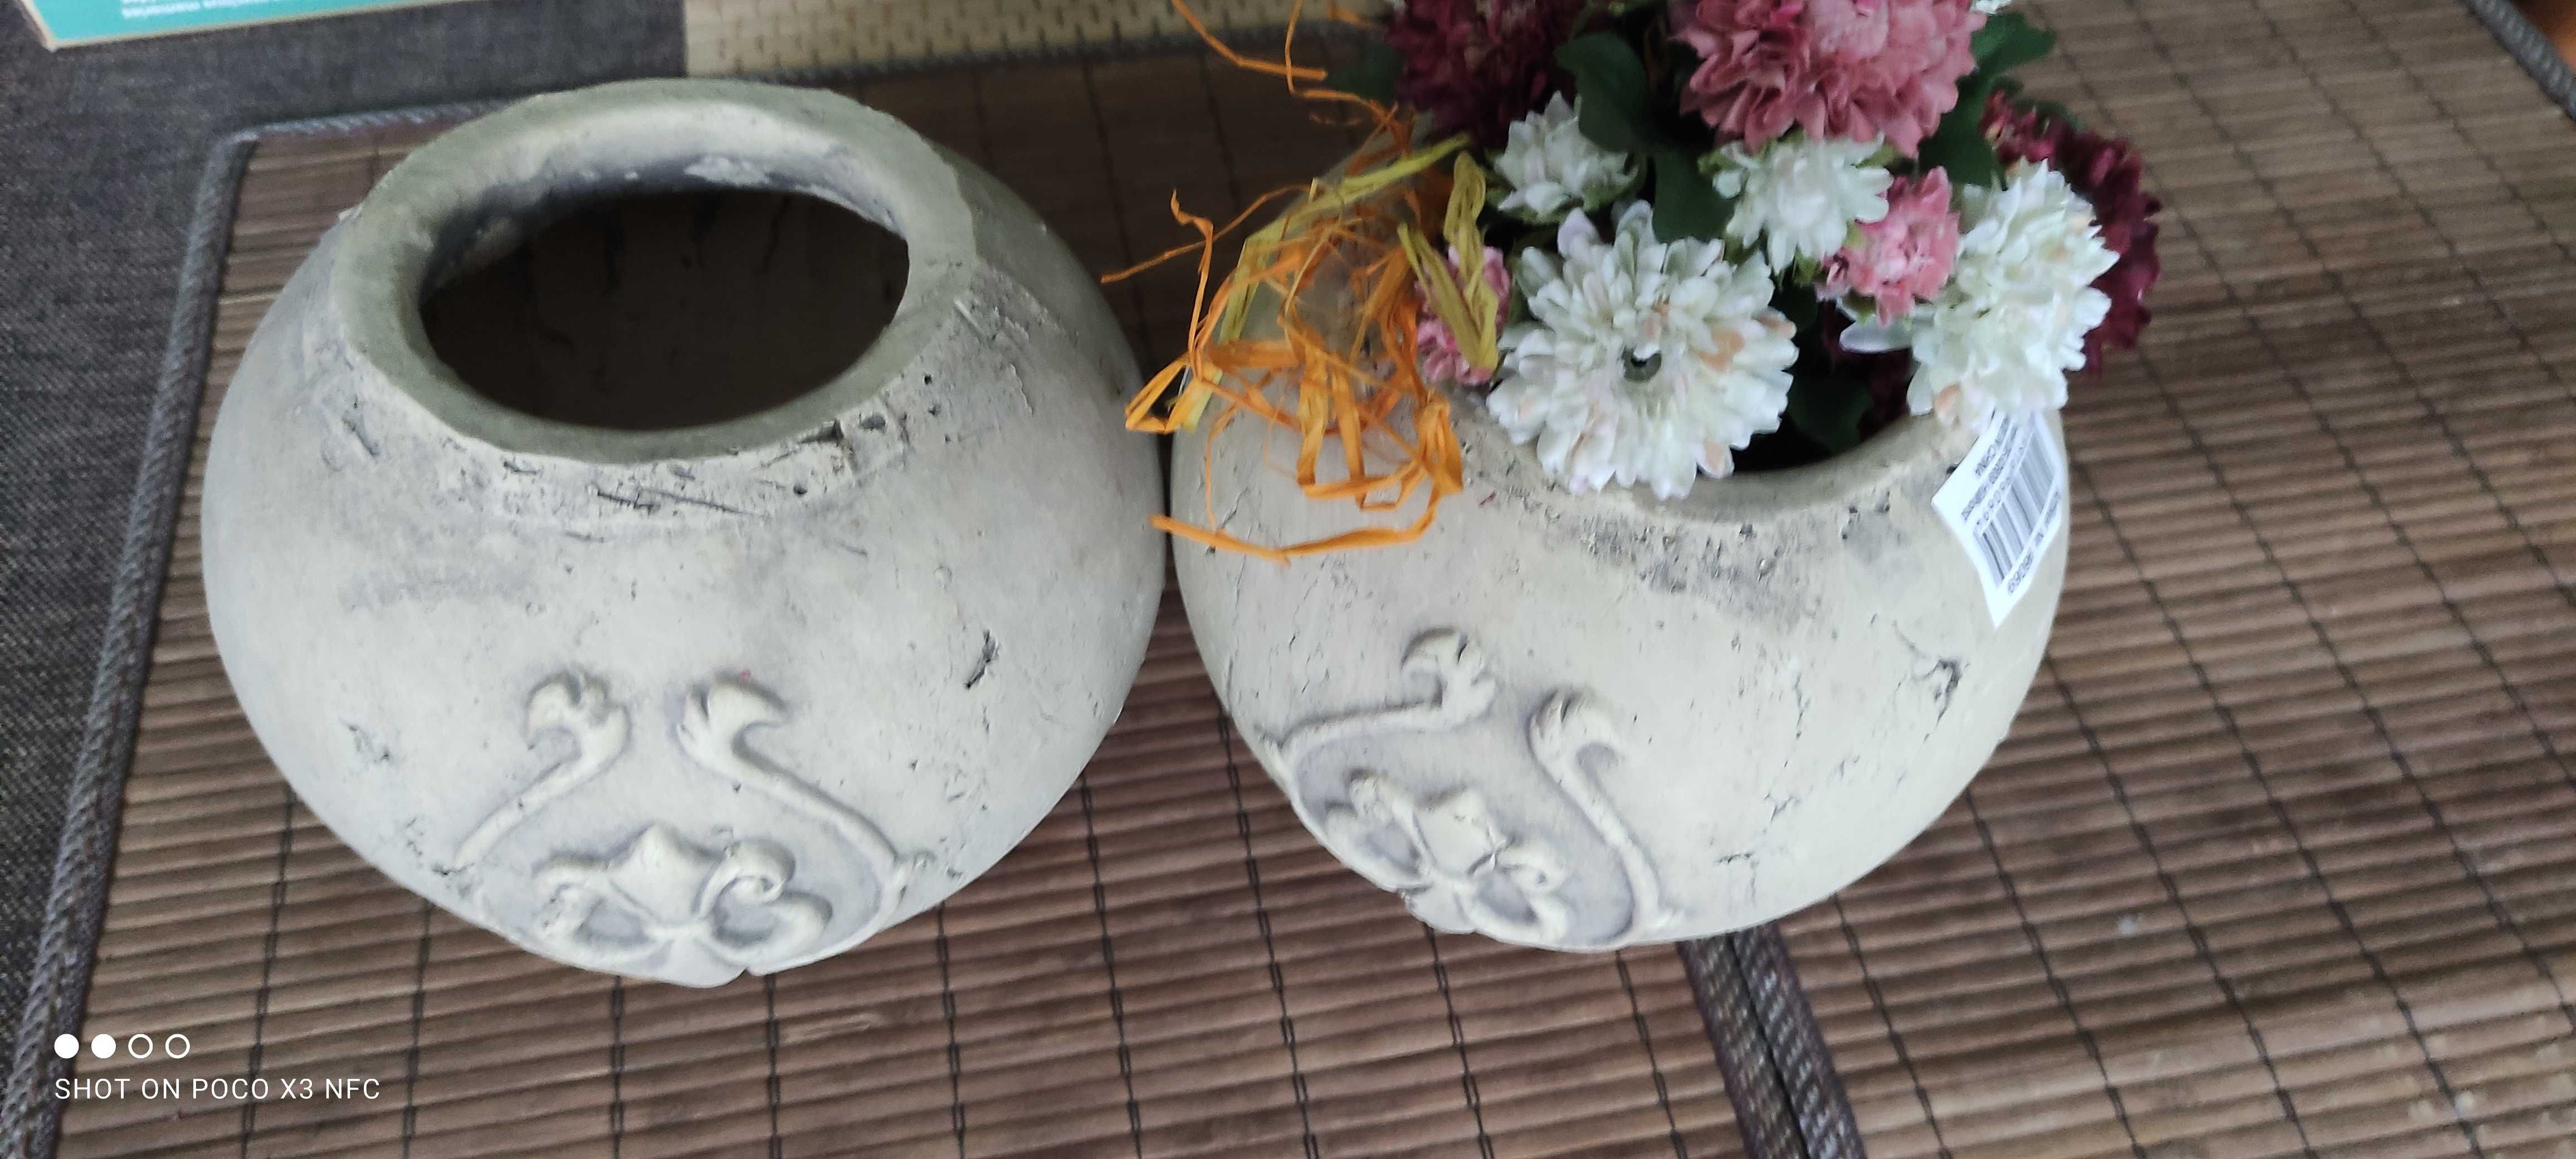 Kule ceramiczne 2 szt. na kwiaty, świece do ogrodu lub domu. komplet